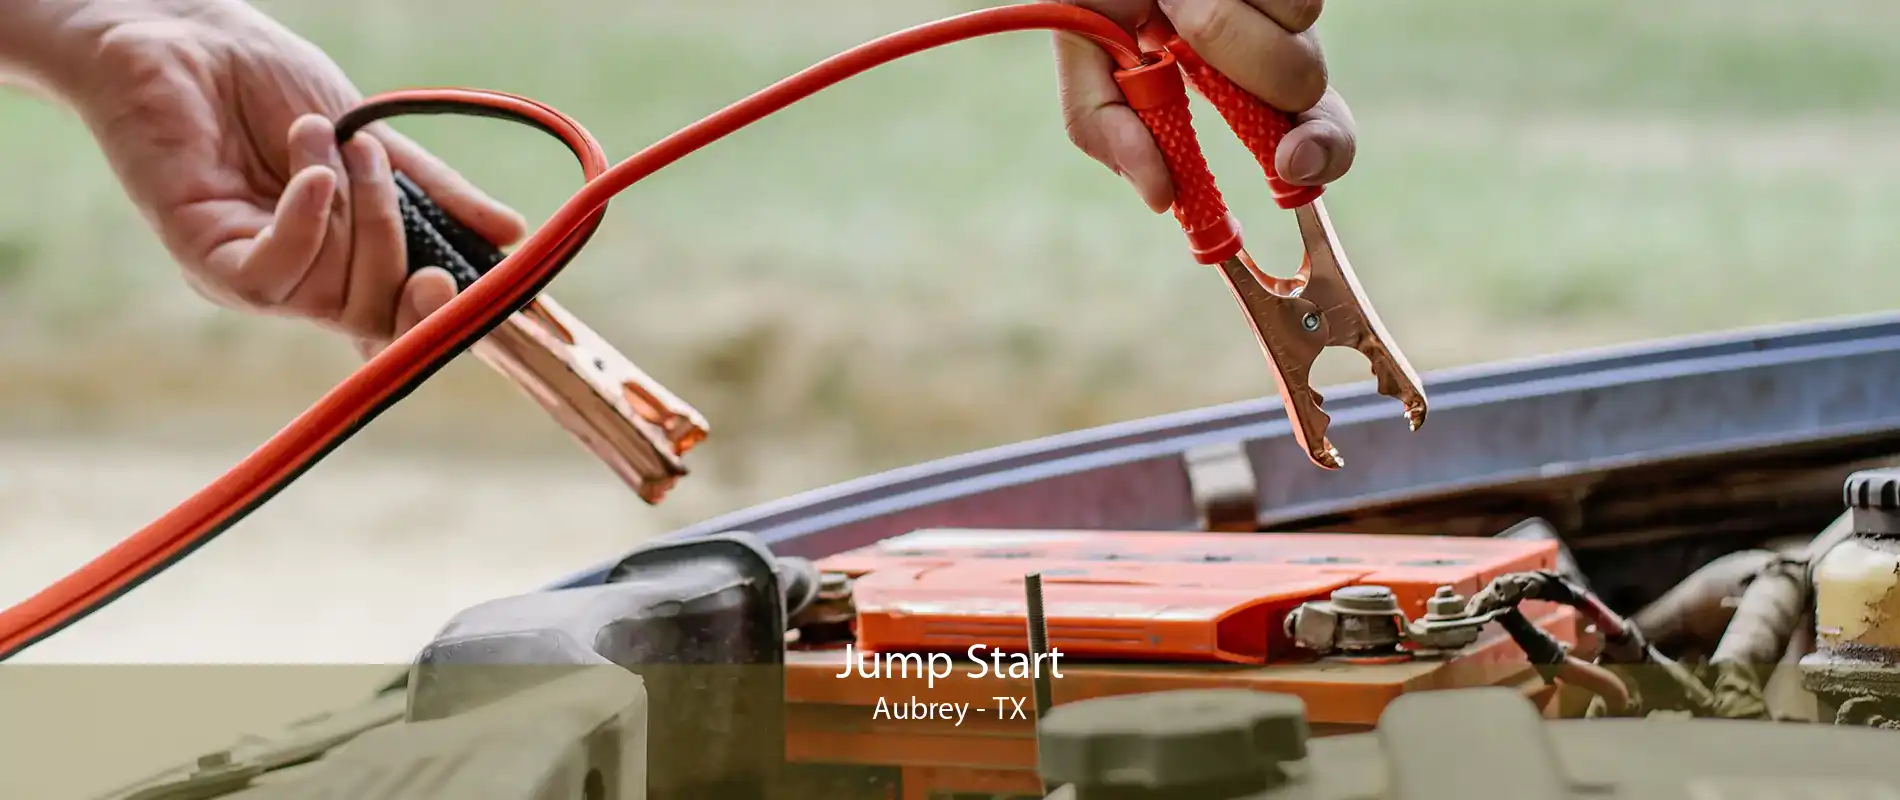 Jump Start Aubrey - TX